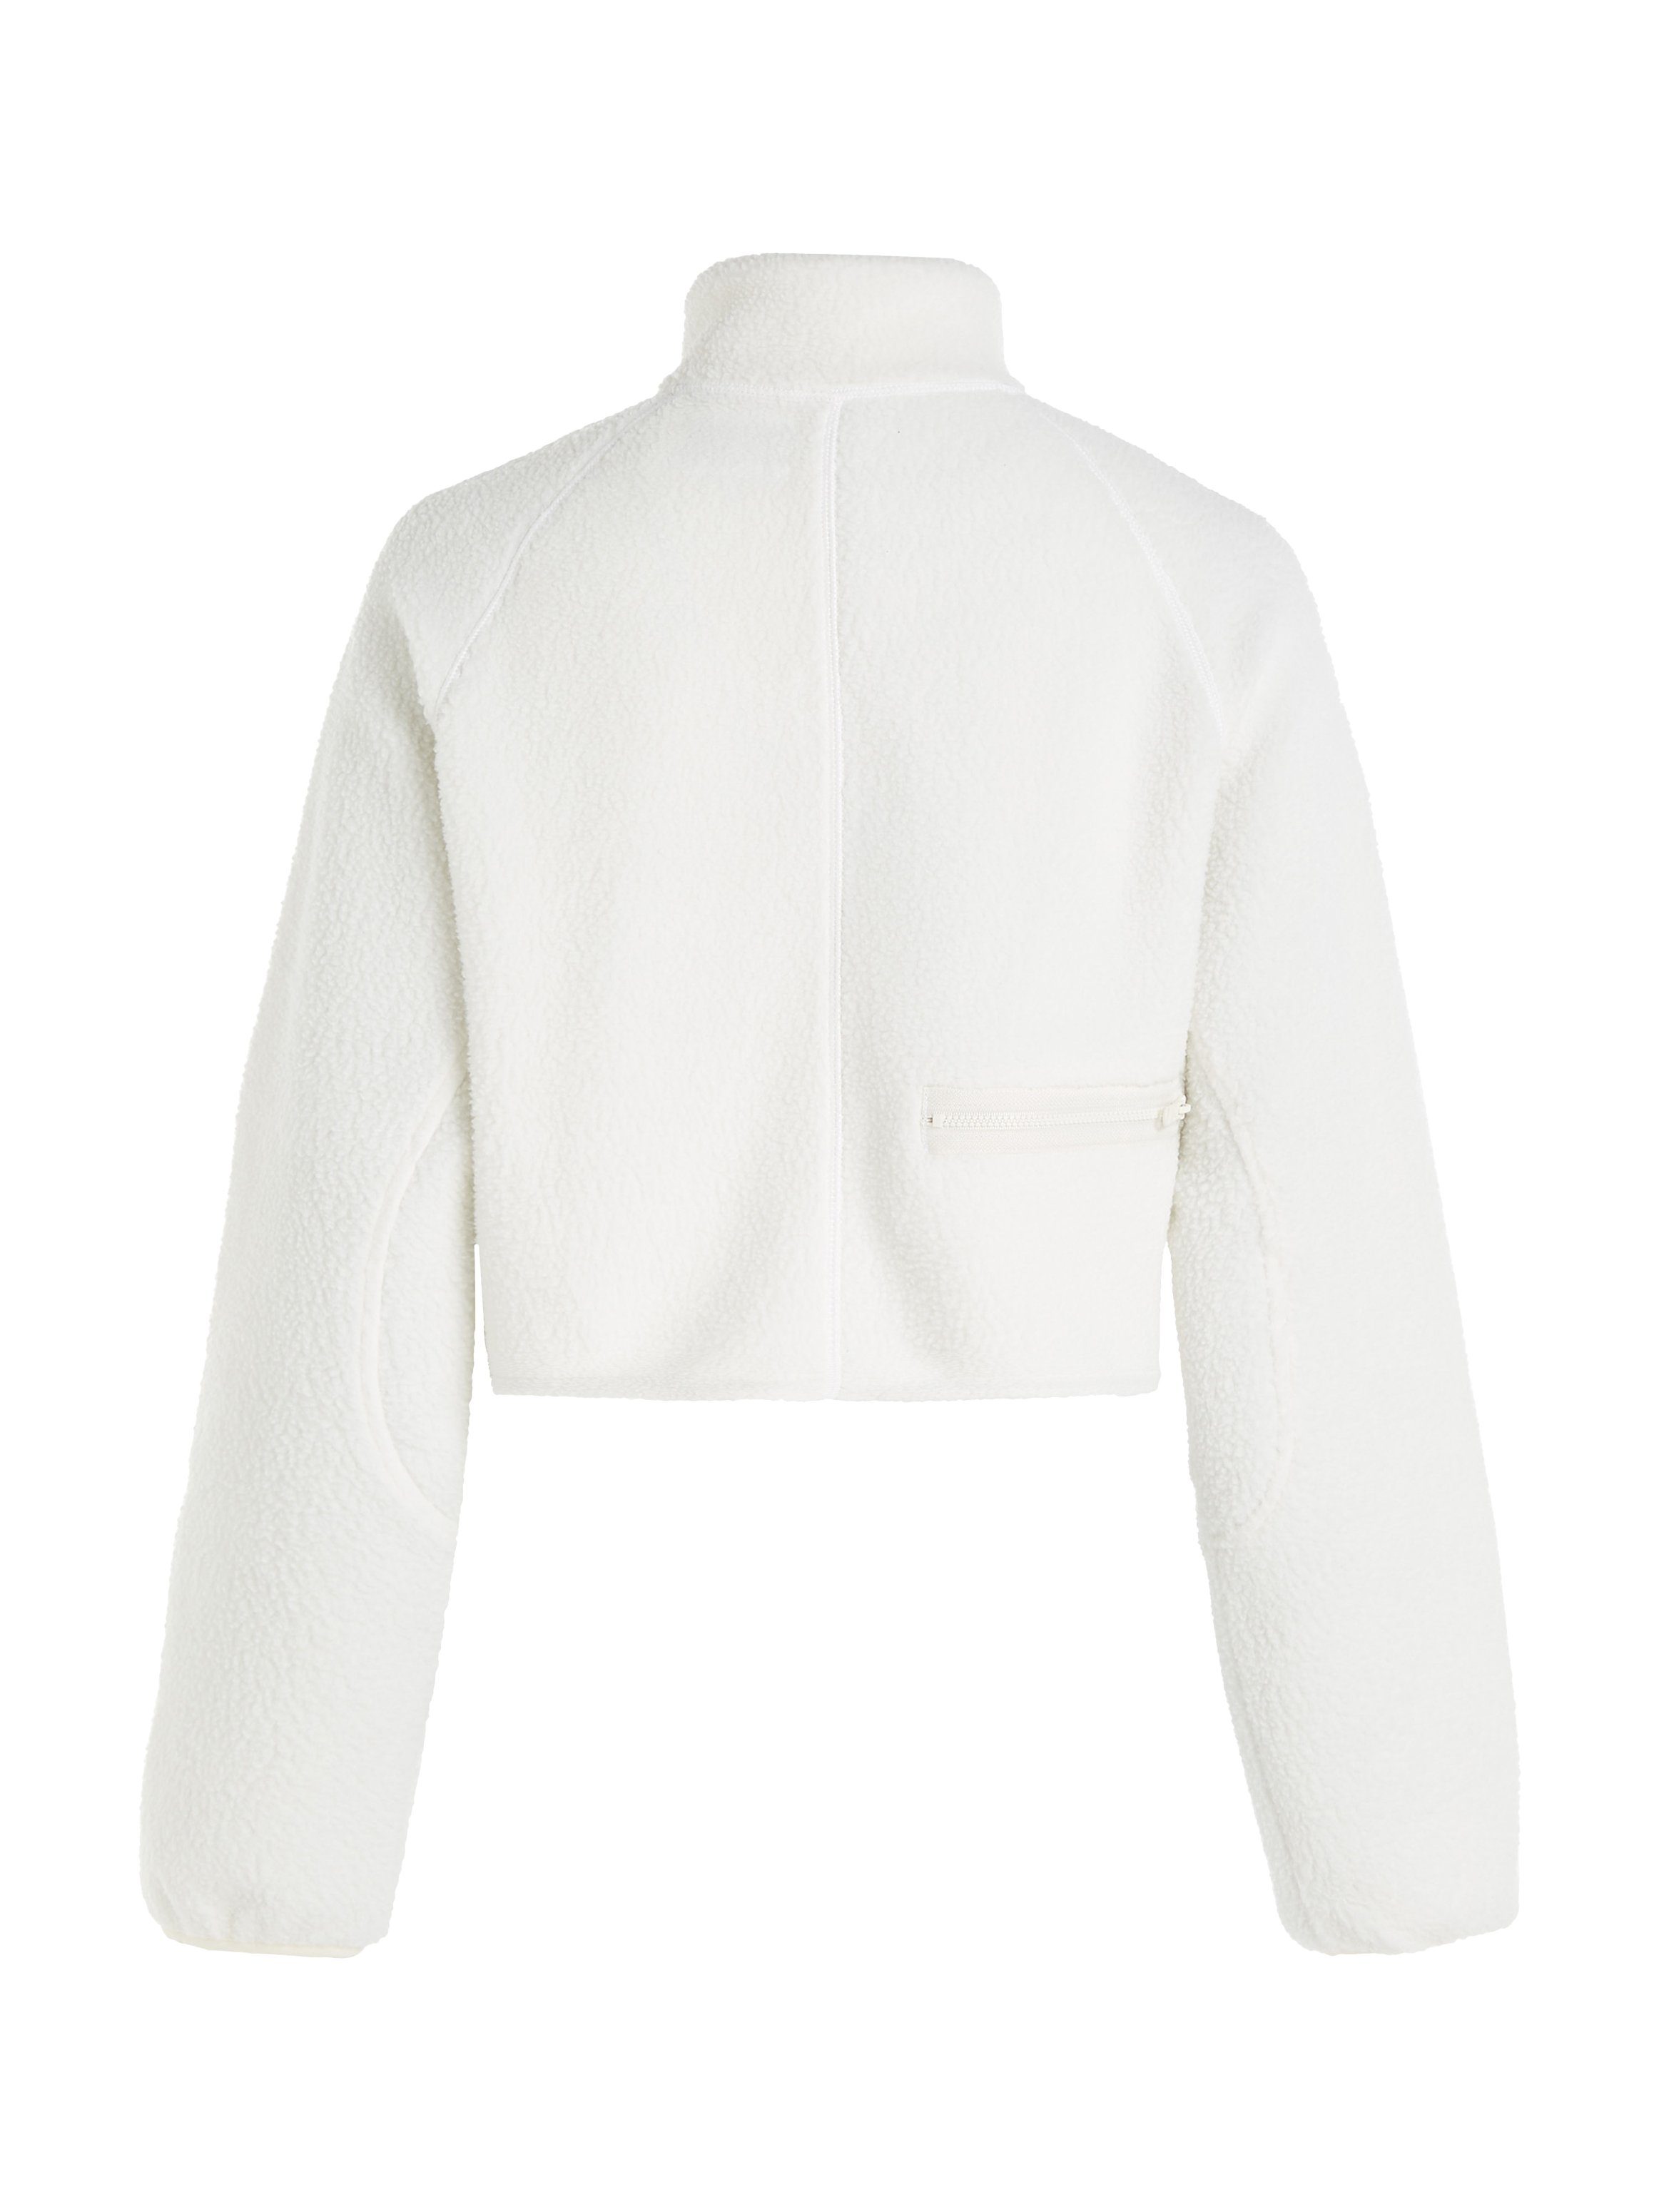 Calvin Klein Sherpa Sport ecru HYBRID Pullover Stehkragenpullover 